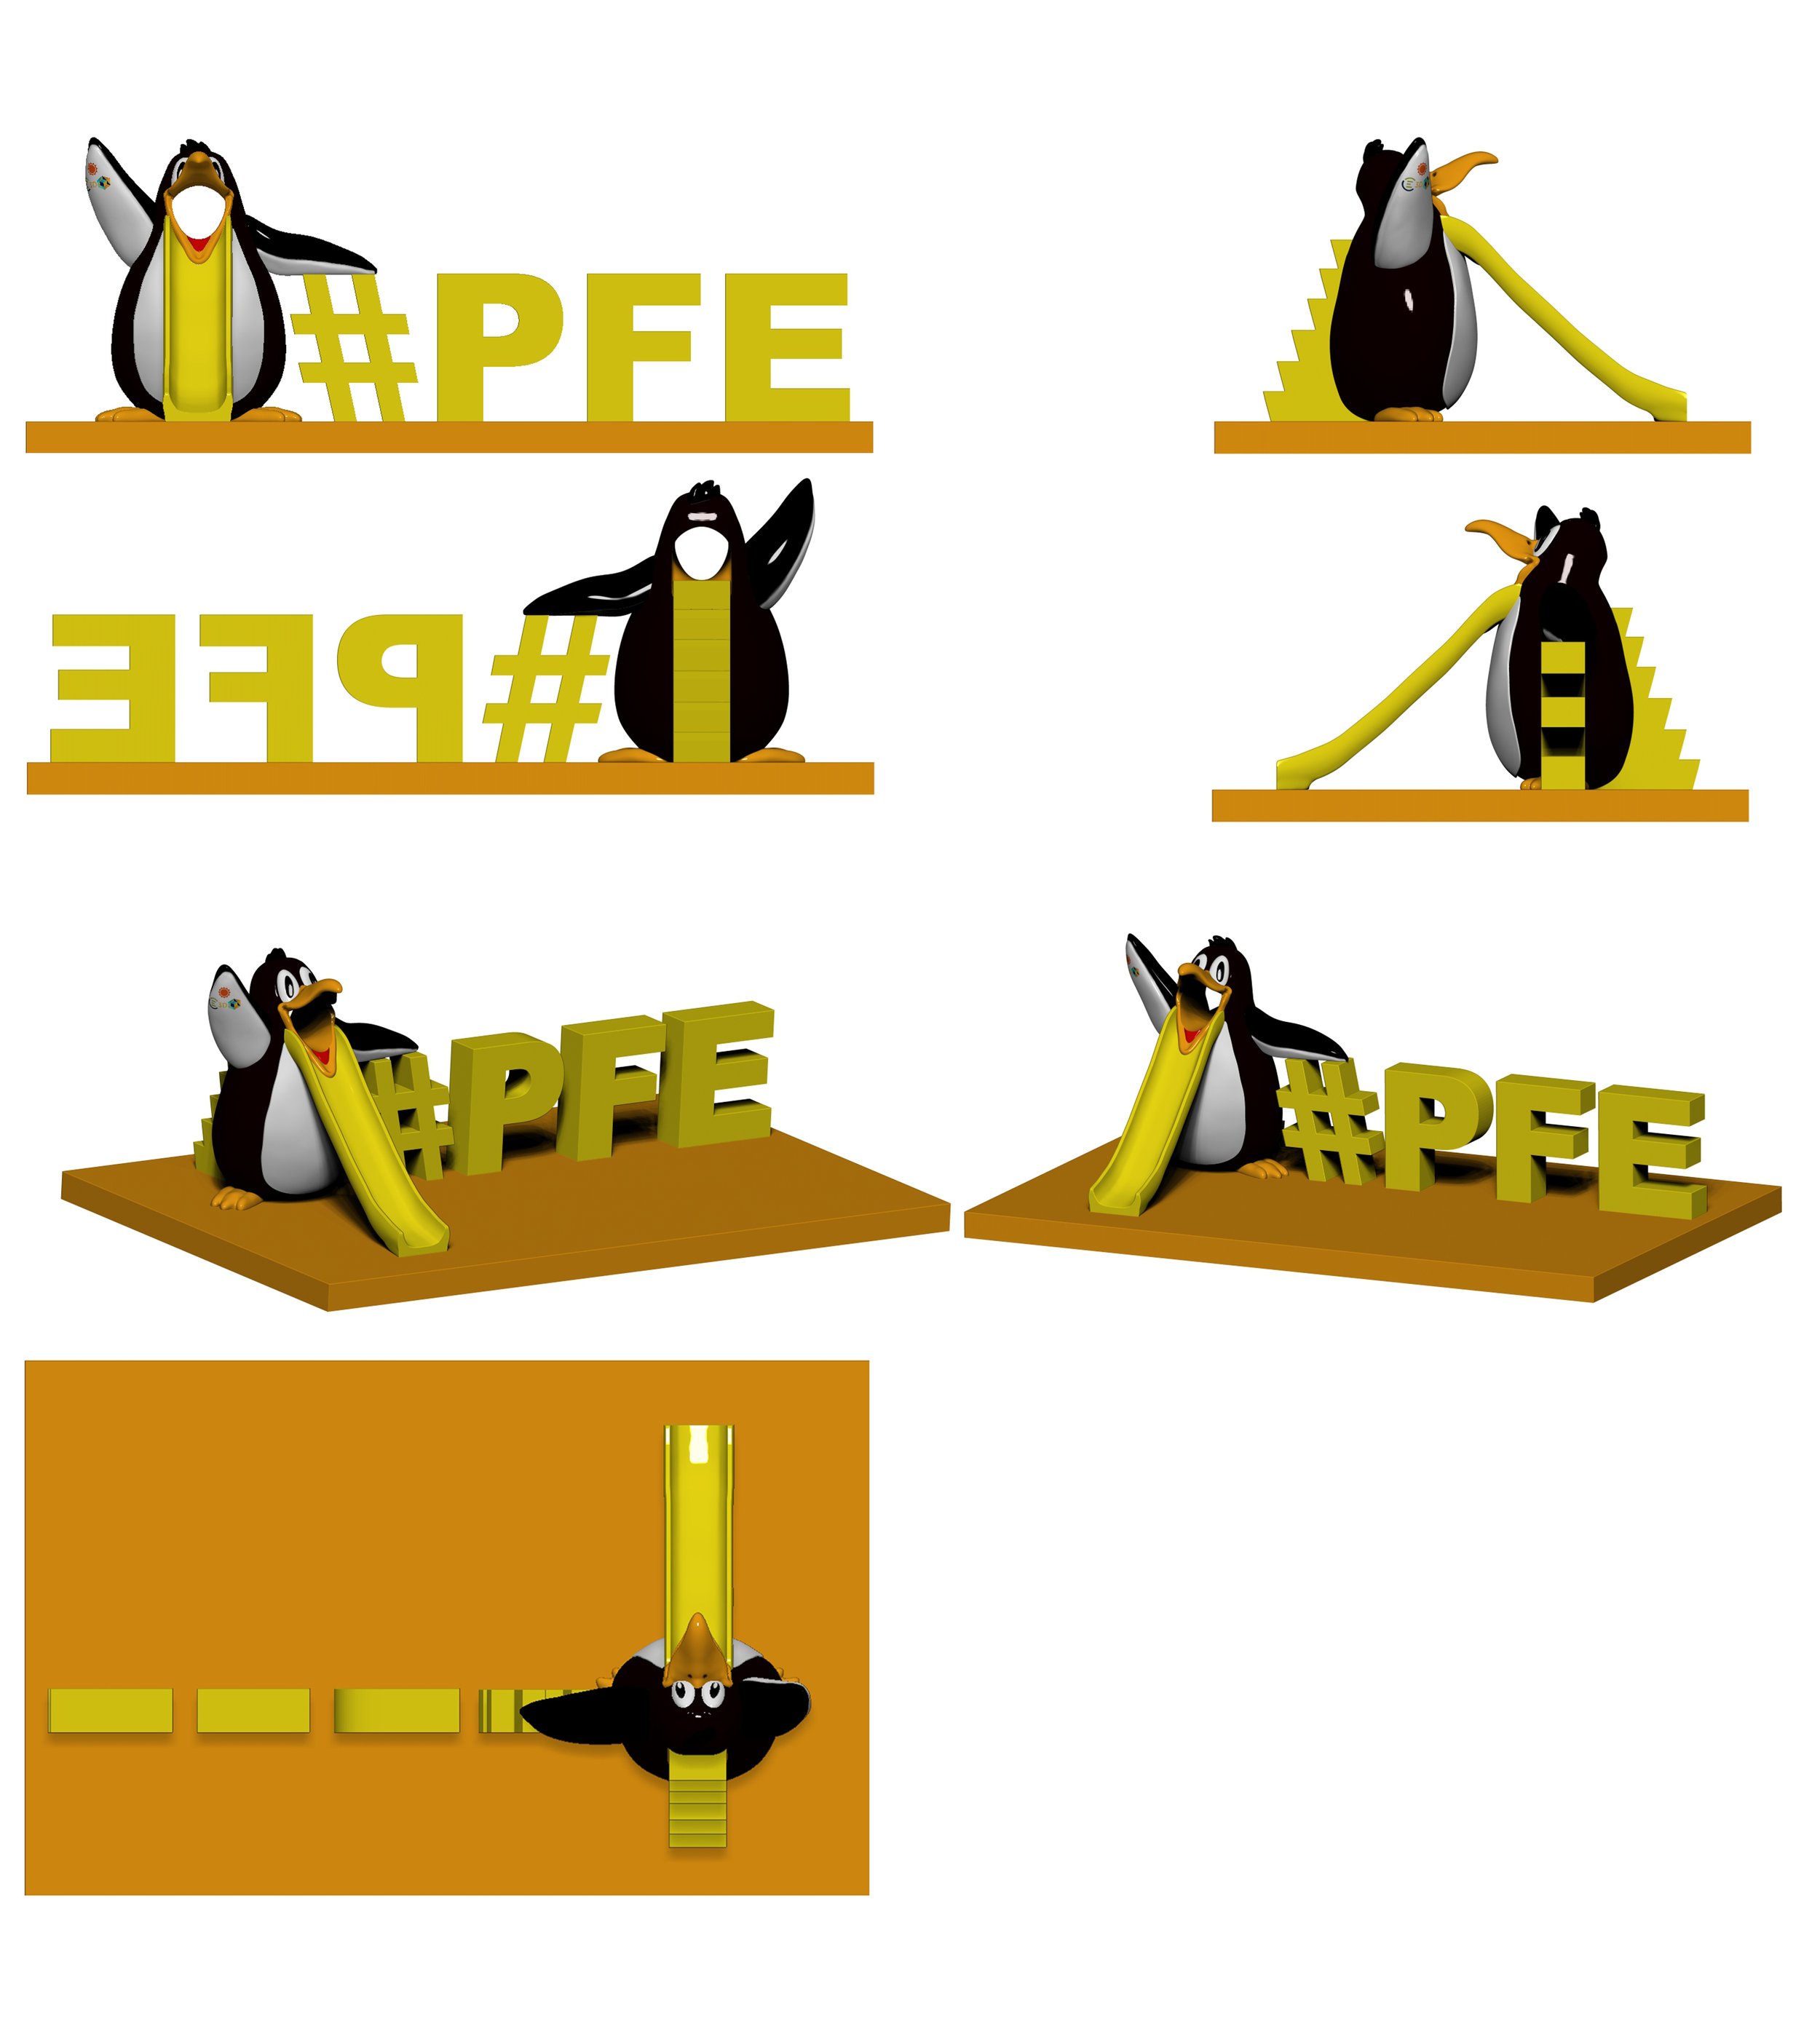 Penguin-slide-painted-version-5-wip.jpg